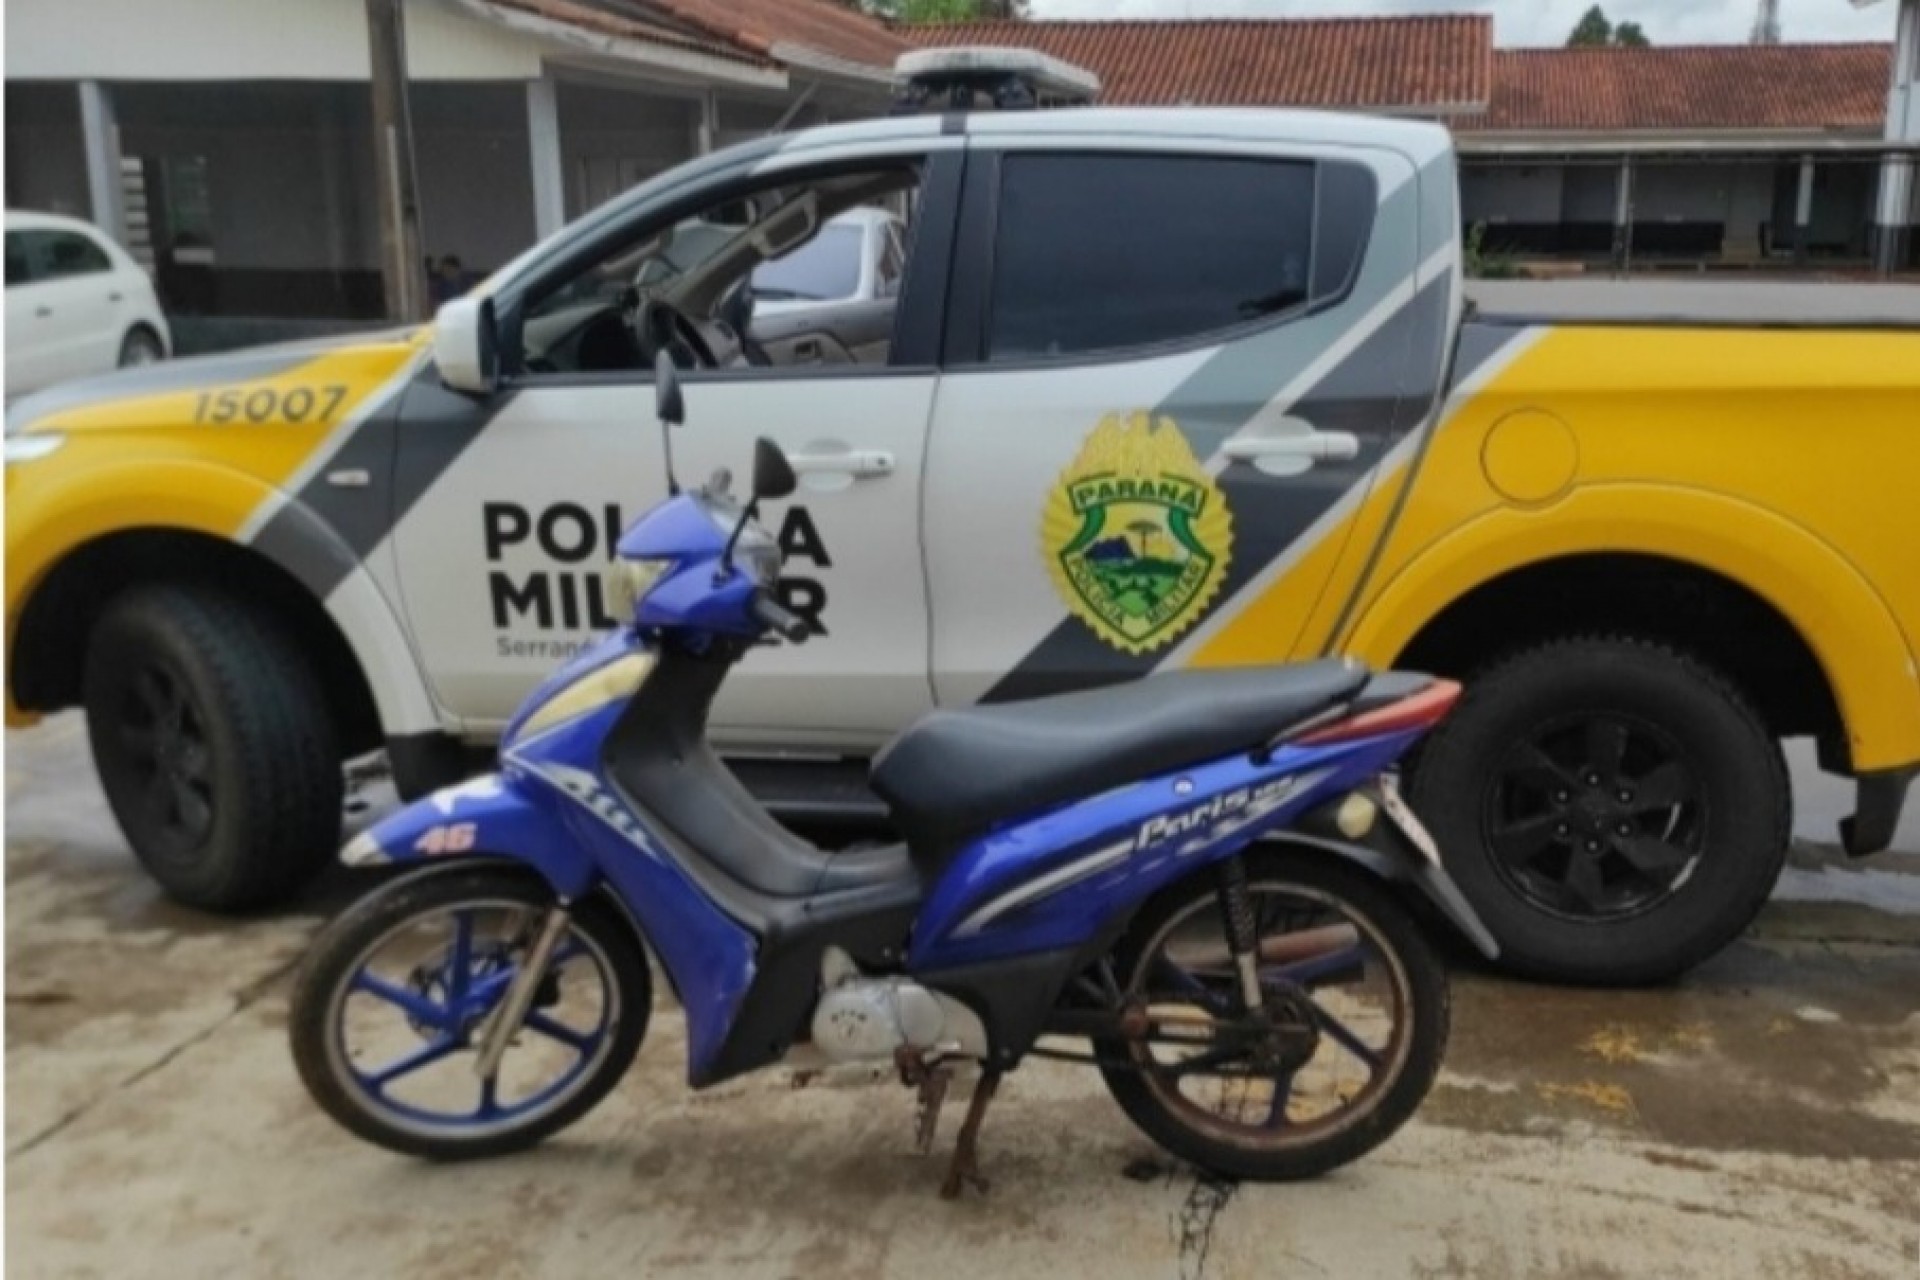 Polícia Militar recupera moto furtada em Serranópolis do Iguaçu